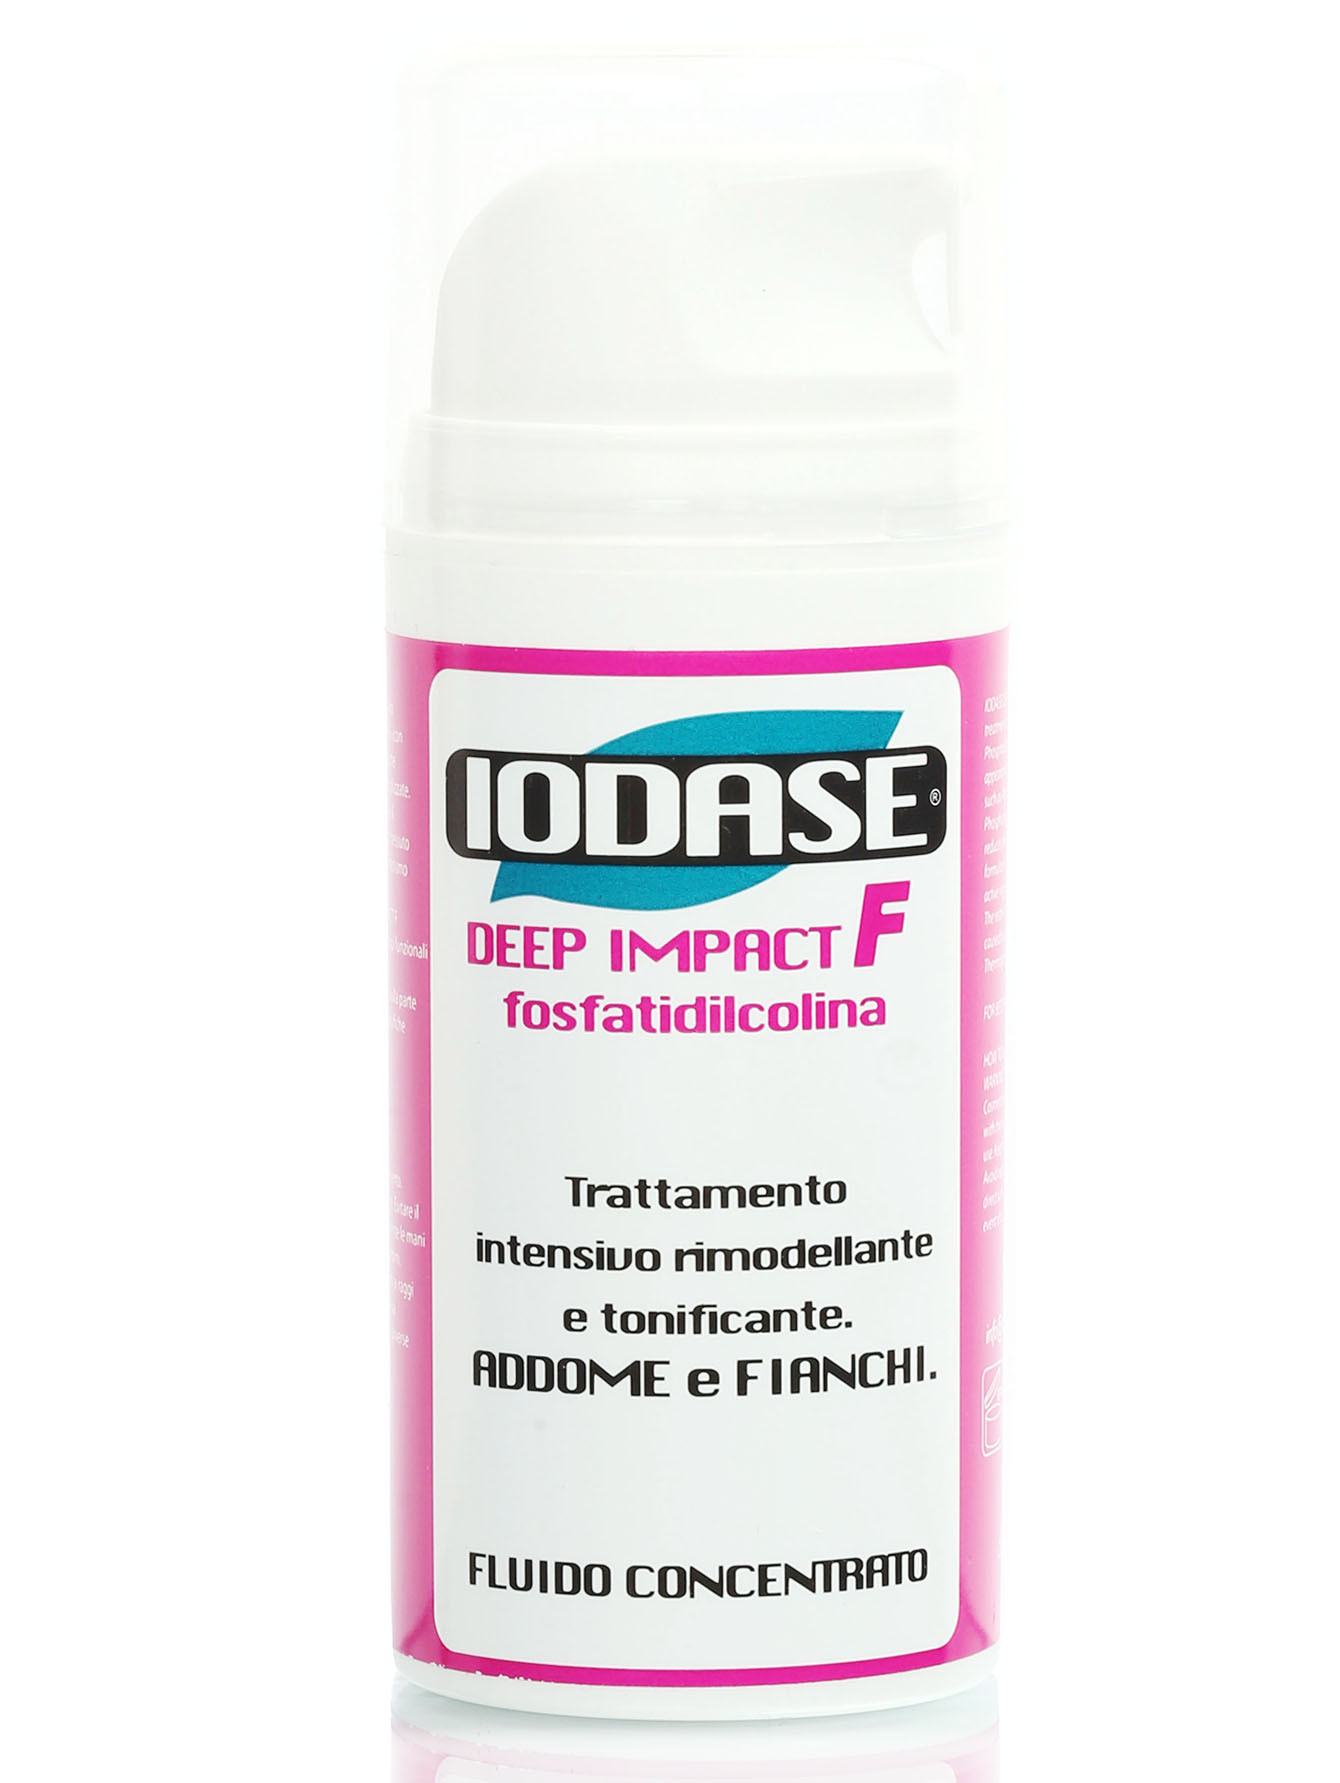  Сыворотка для удаления жировых отложений "Iodase Deep Impact  F-Fosfatidilcolina" - Body Care, 100ml - Общий вид